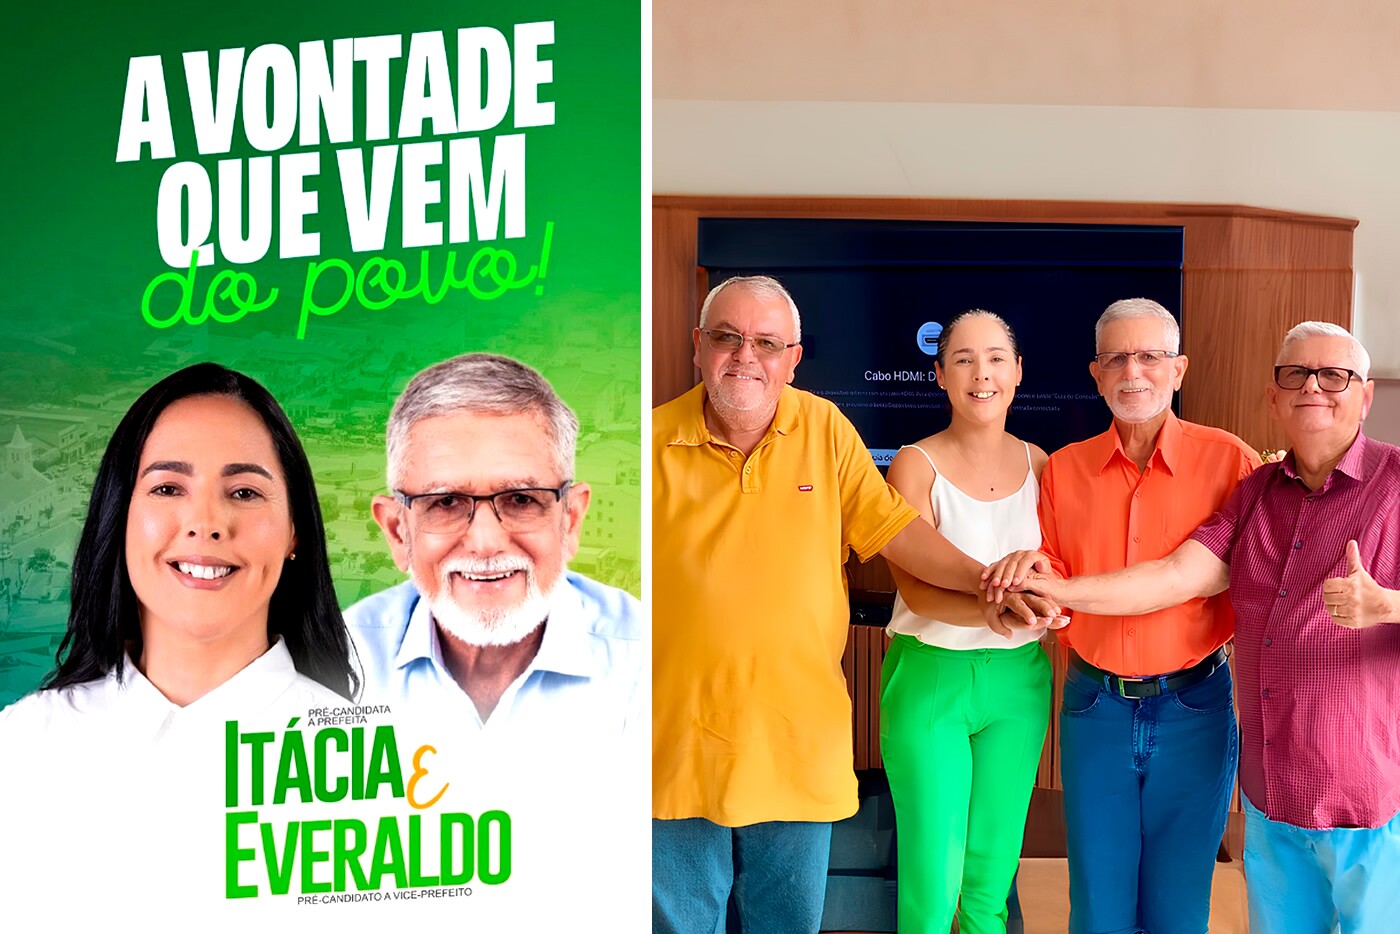 Itácia e Everaldo se unem e anunciam pré-candidatura para Prefeito e Vice em Monte Santo